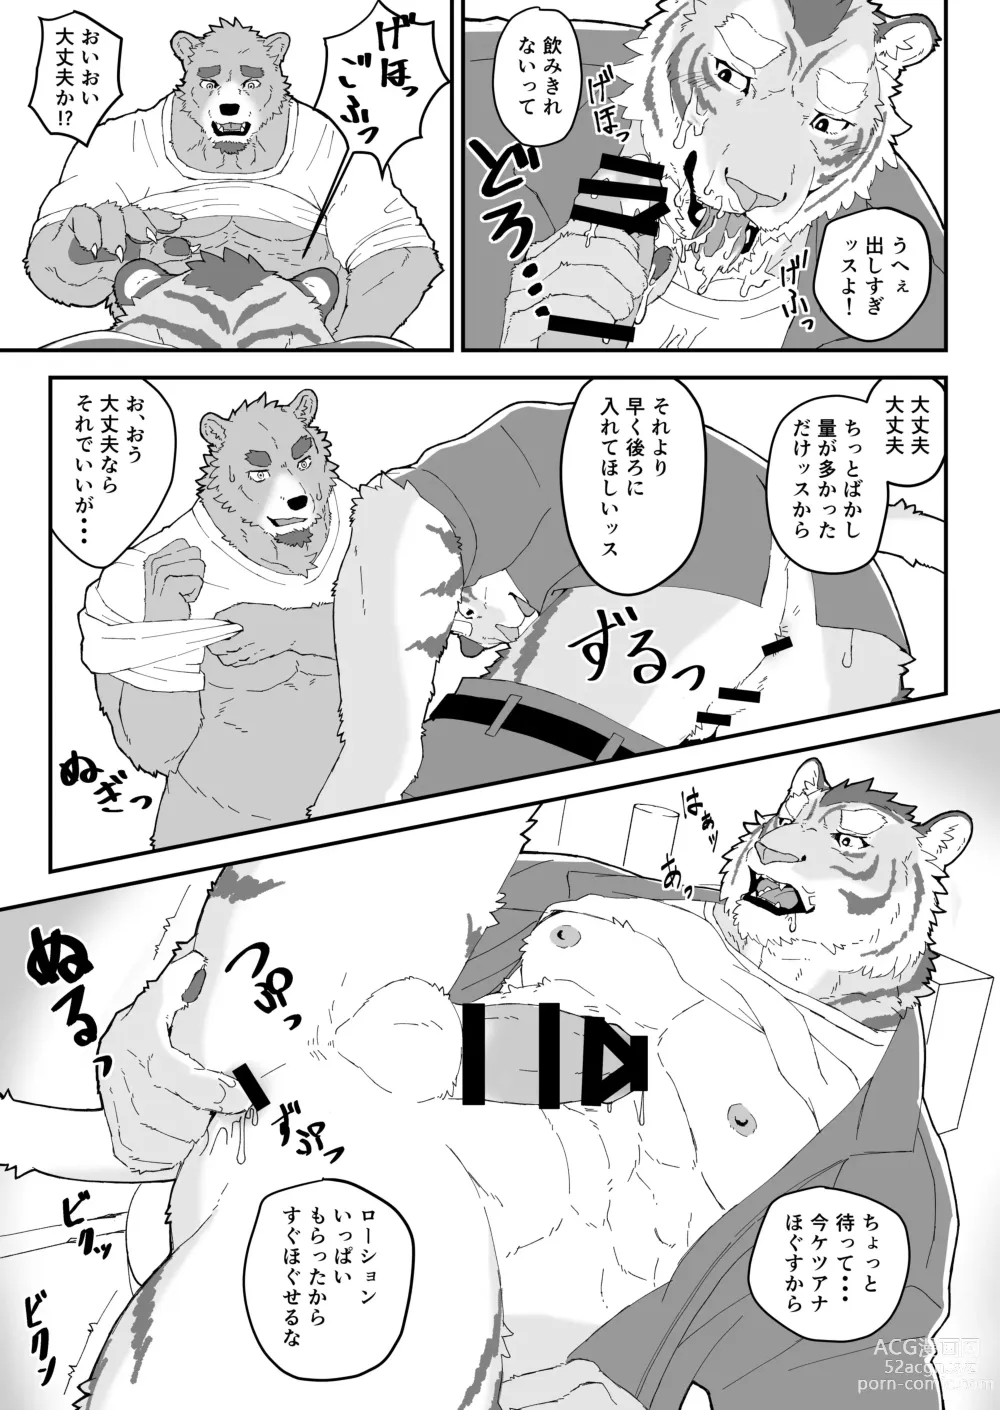 Page 10 of doujinshi Shiranuri Shokunin